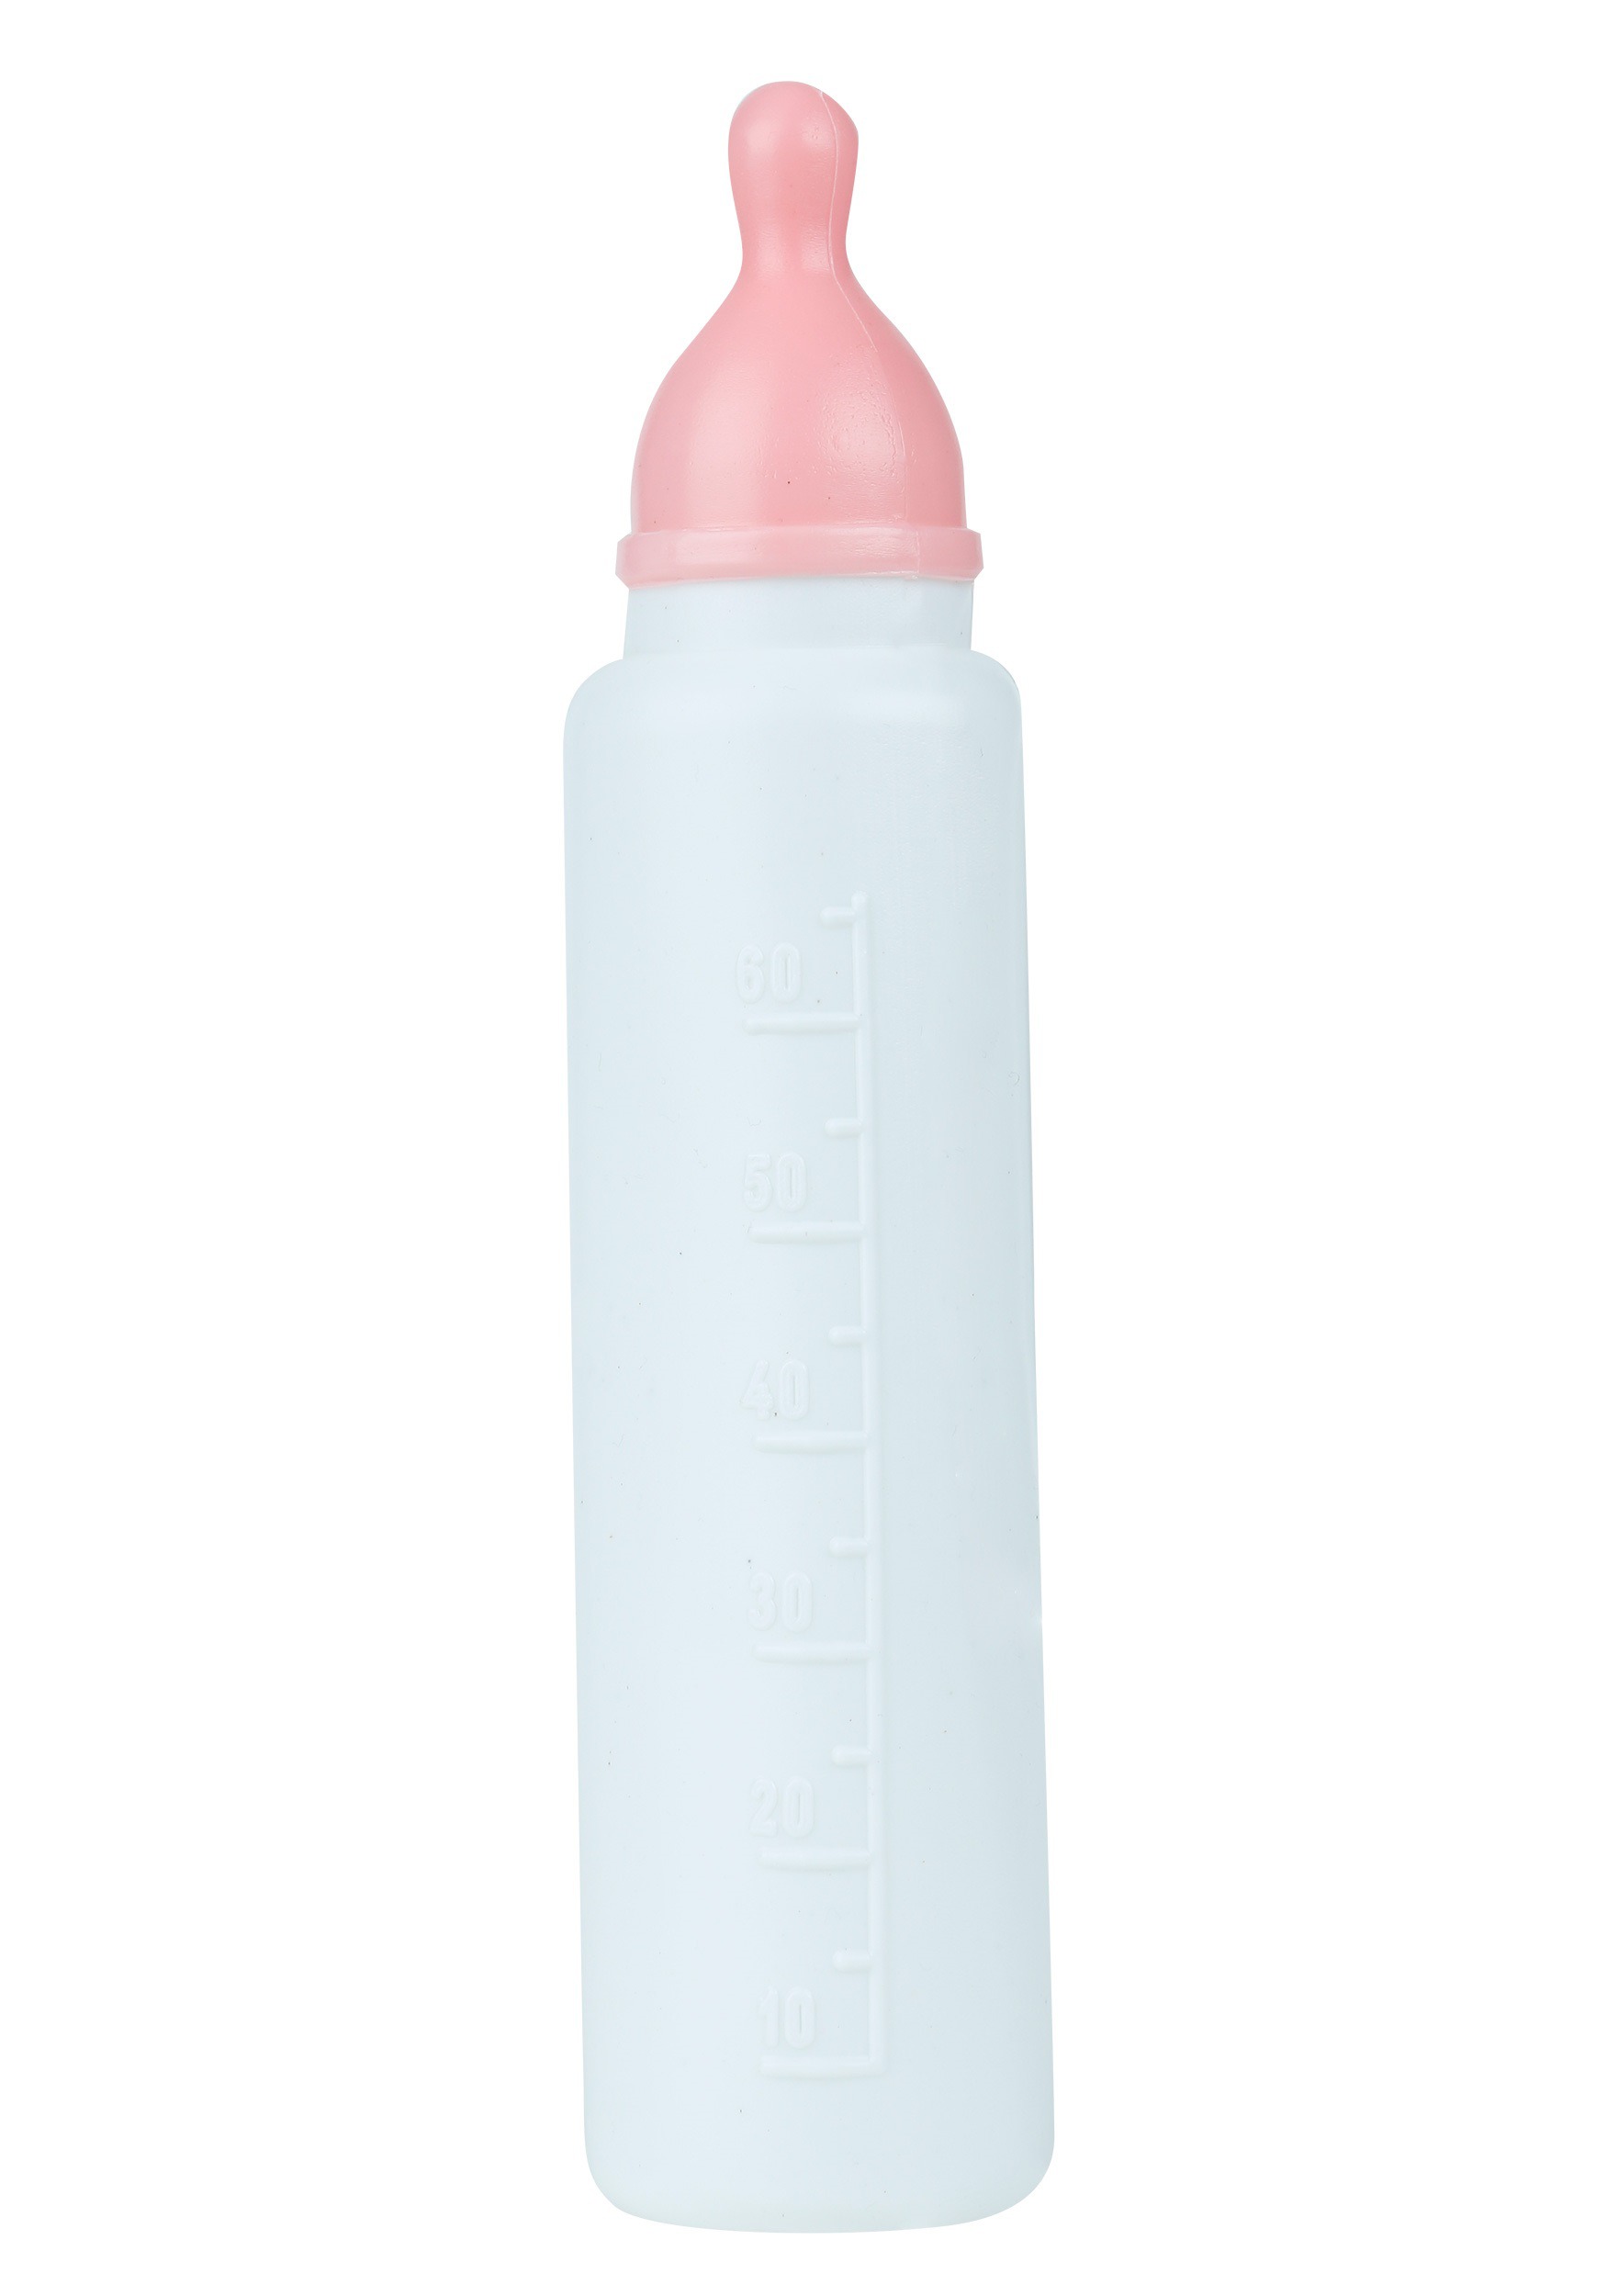 jumbo-pink-baby-bottle.jpg